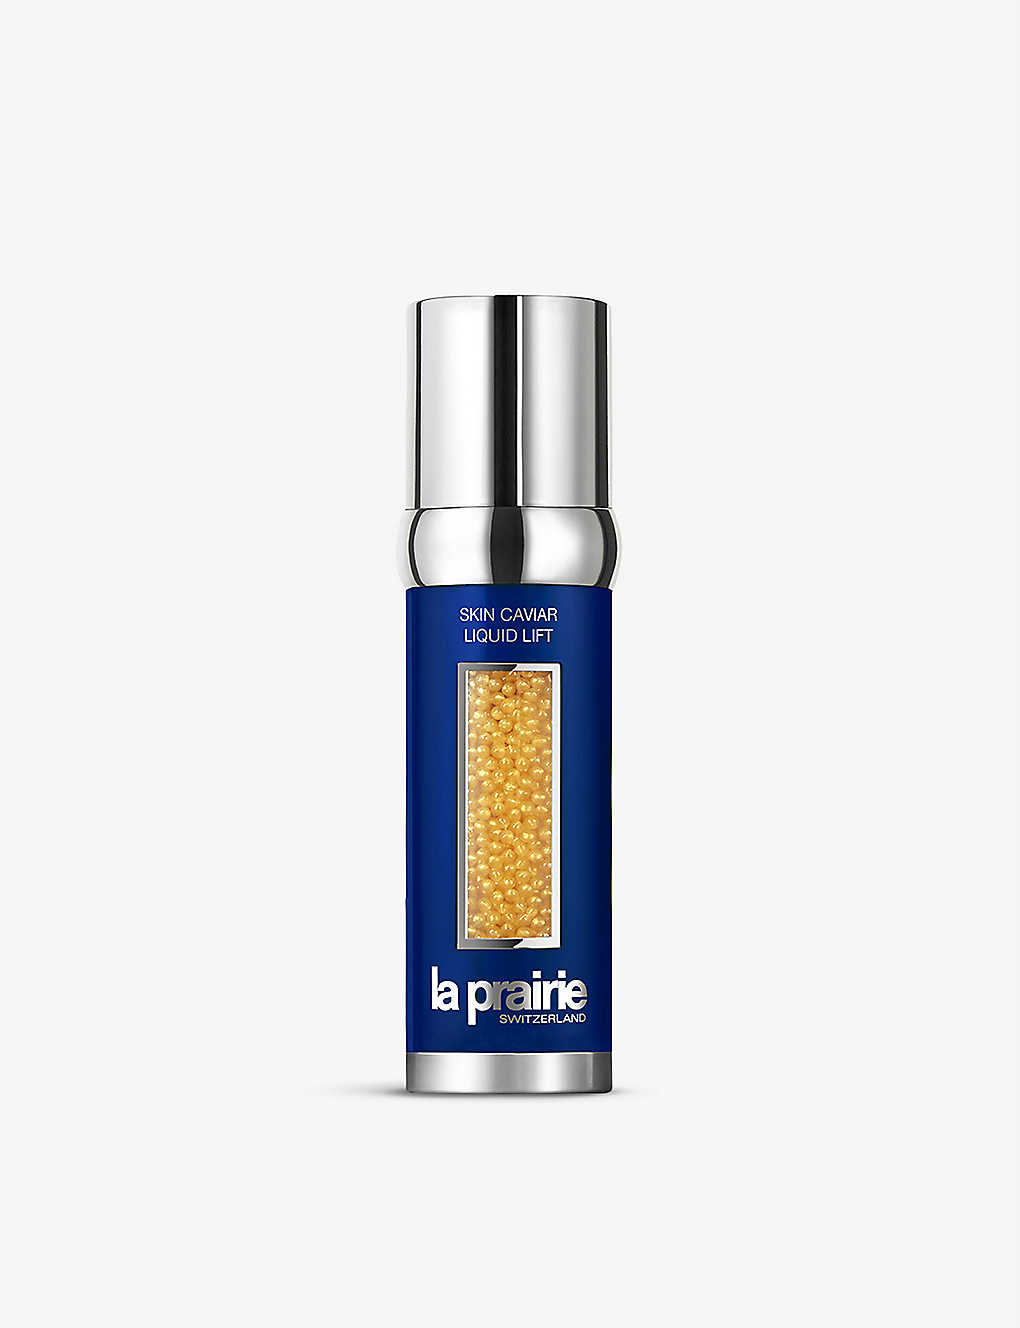 LA PRAIRIE: Skin Caviar Liquid Lift 50ml